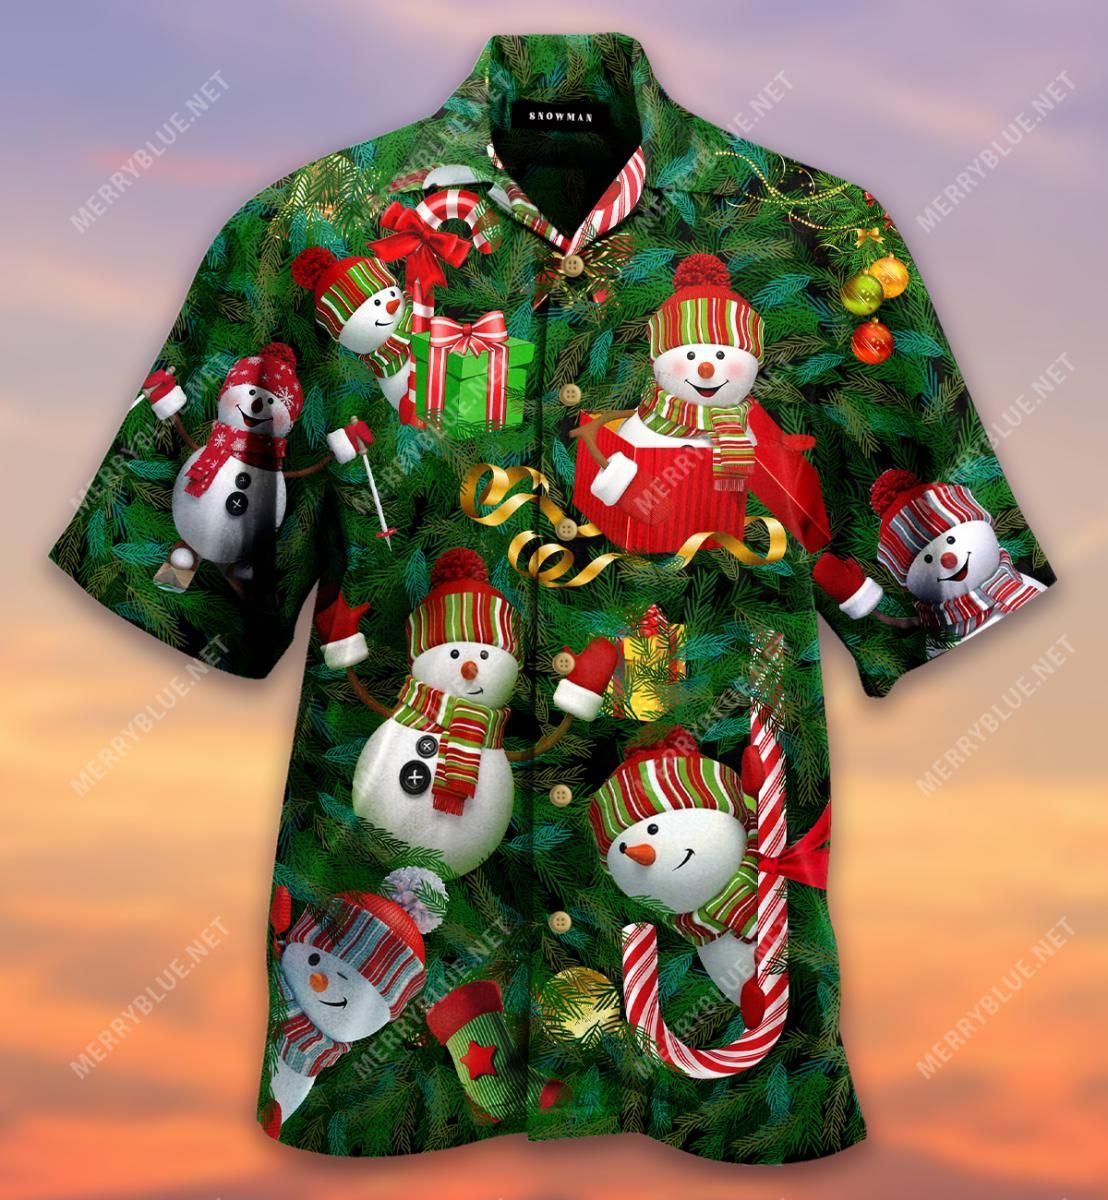 im just a little snowman aloha hawaiian shirt colorful short sleeve summer beach casual shirt for men and women dlcaz